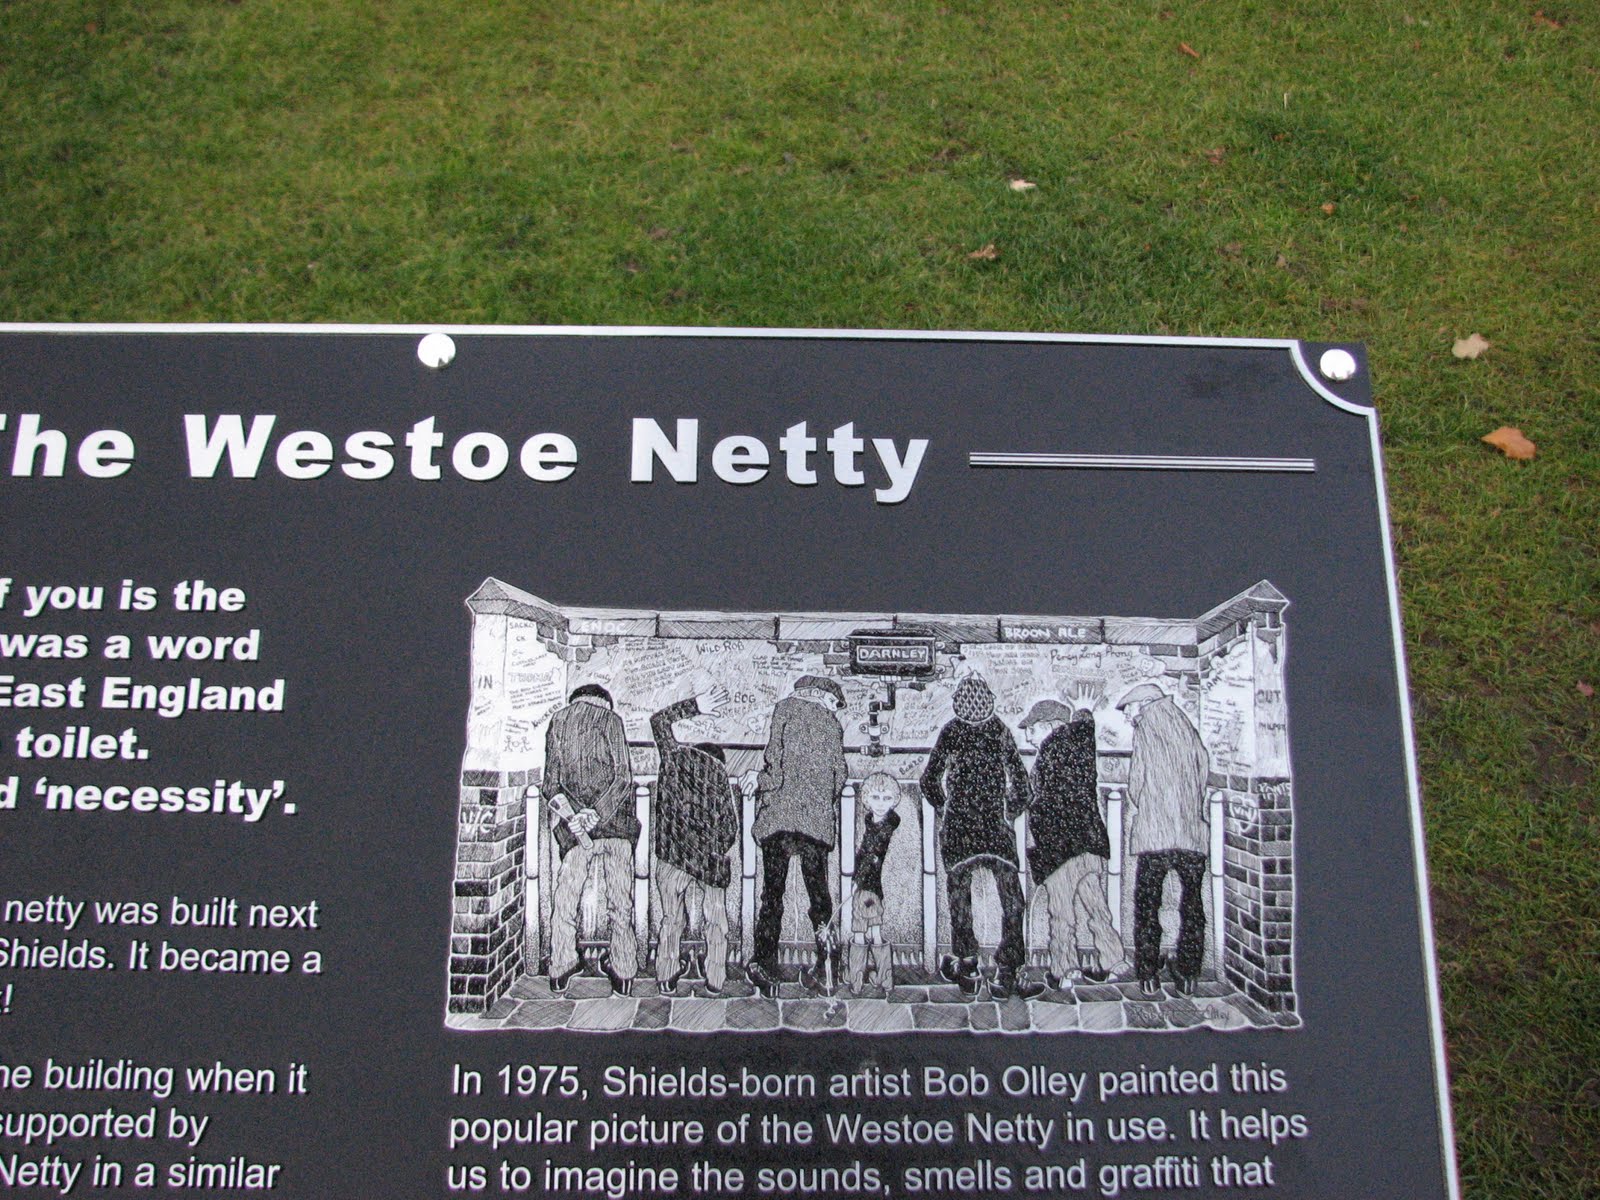 The Westoe Netty